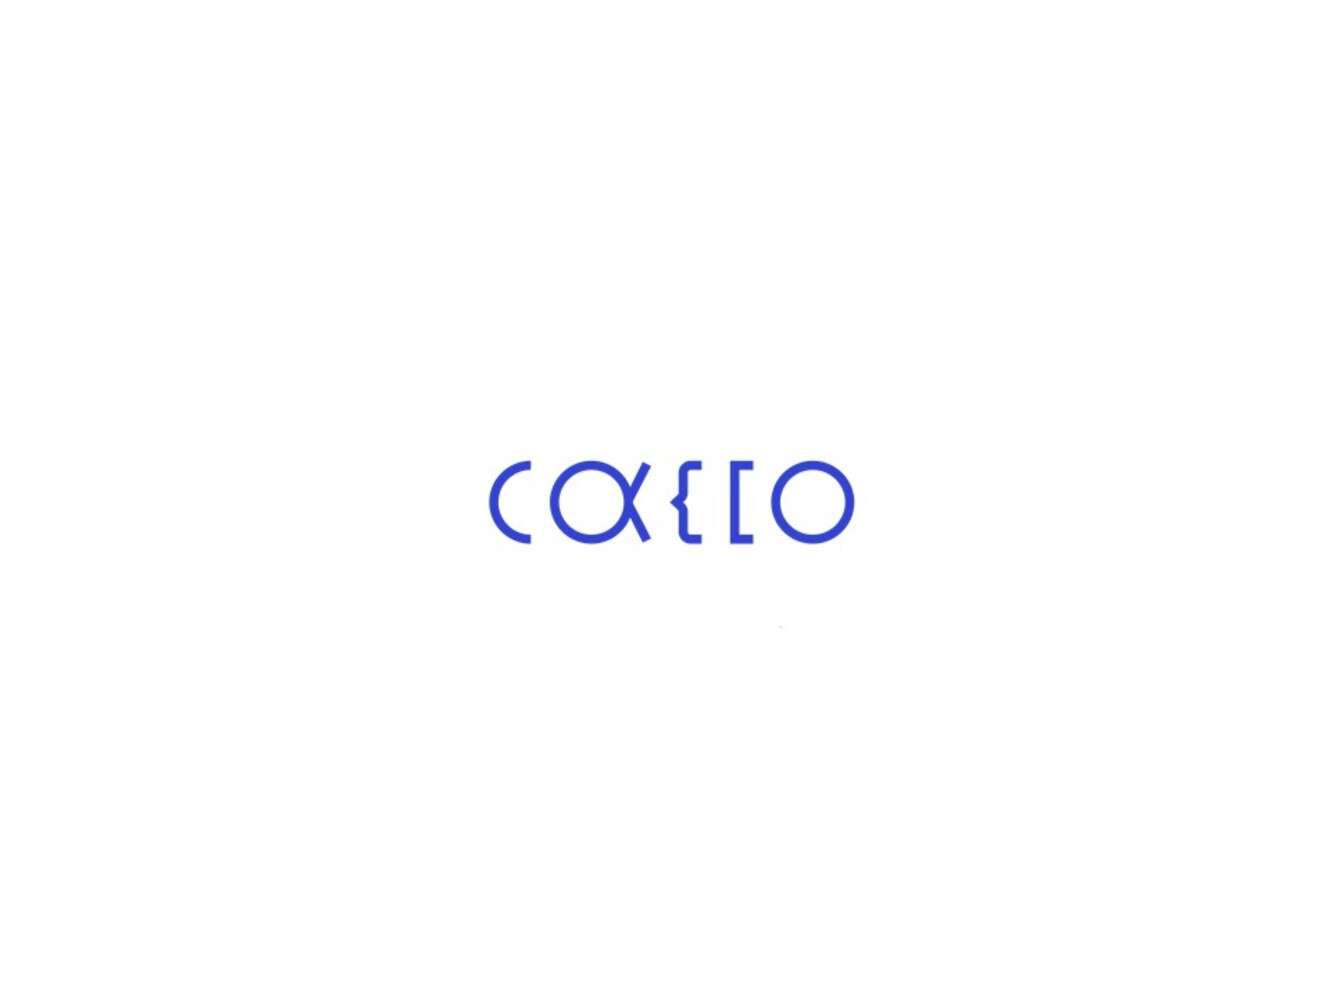 コーポレートアイデンティティ刷新についてのお知らせ かっこ株式会社 Cacco Inc